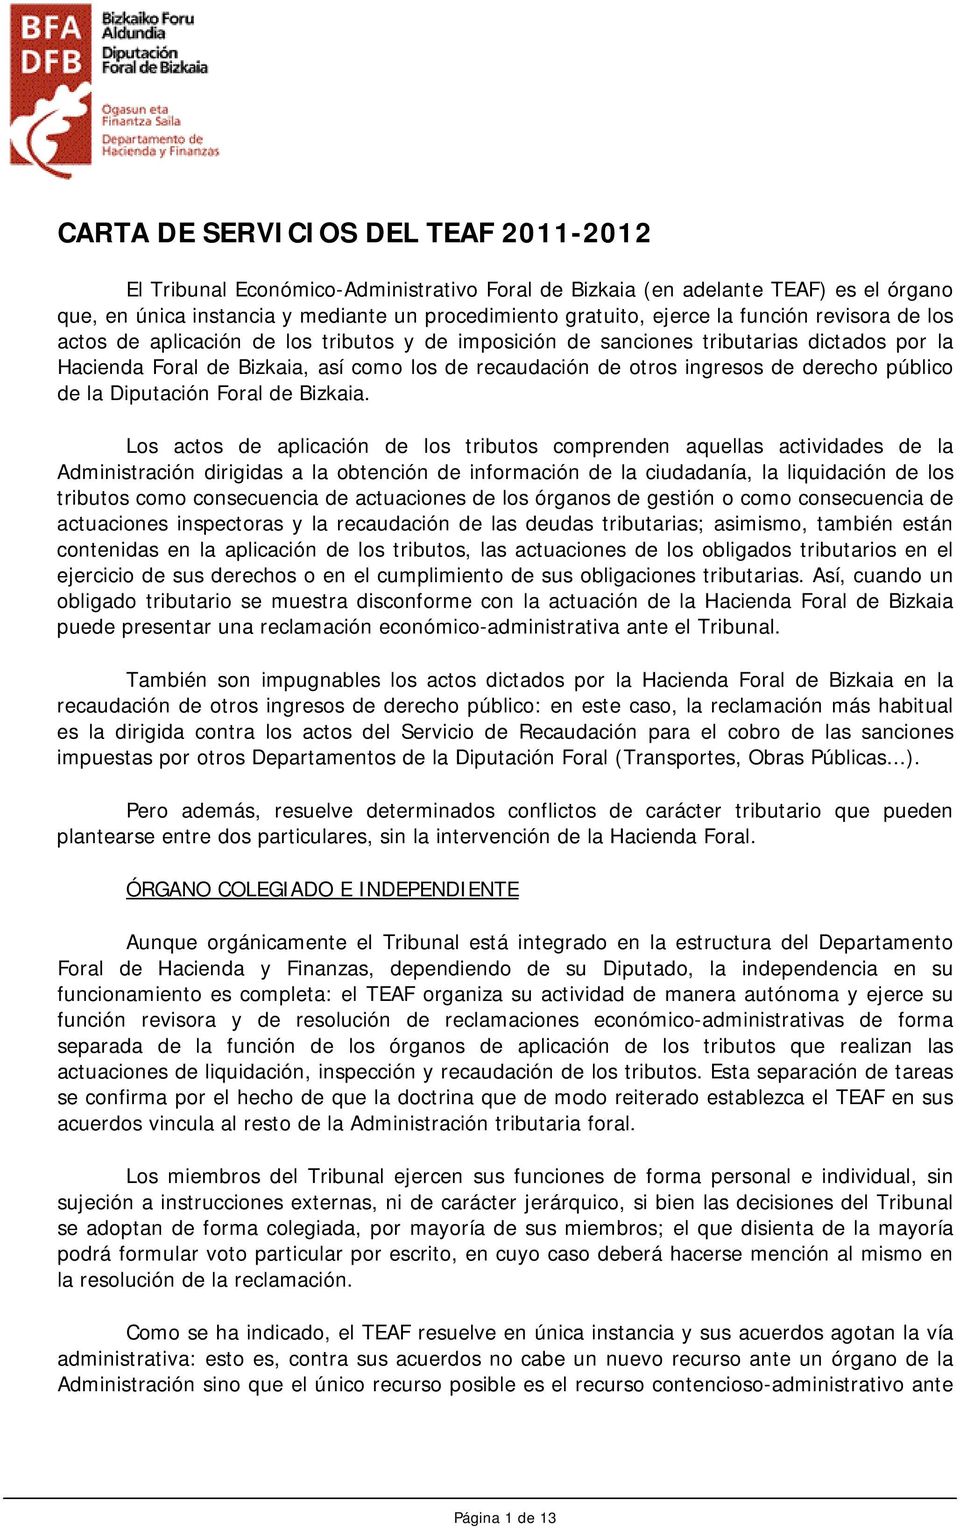 derecho público de la Diputación Foral de Bizkaia.